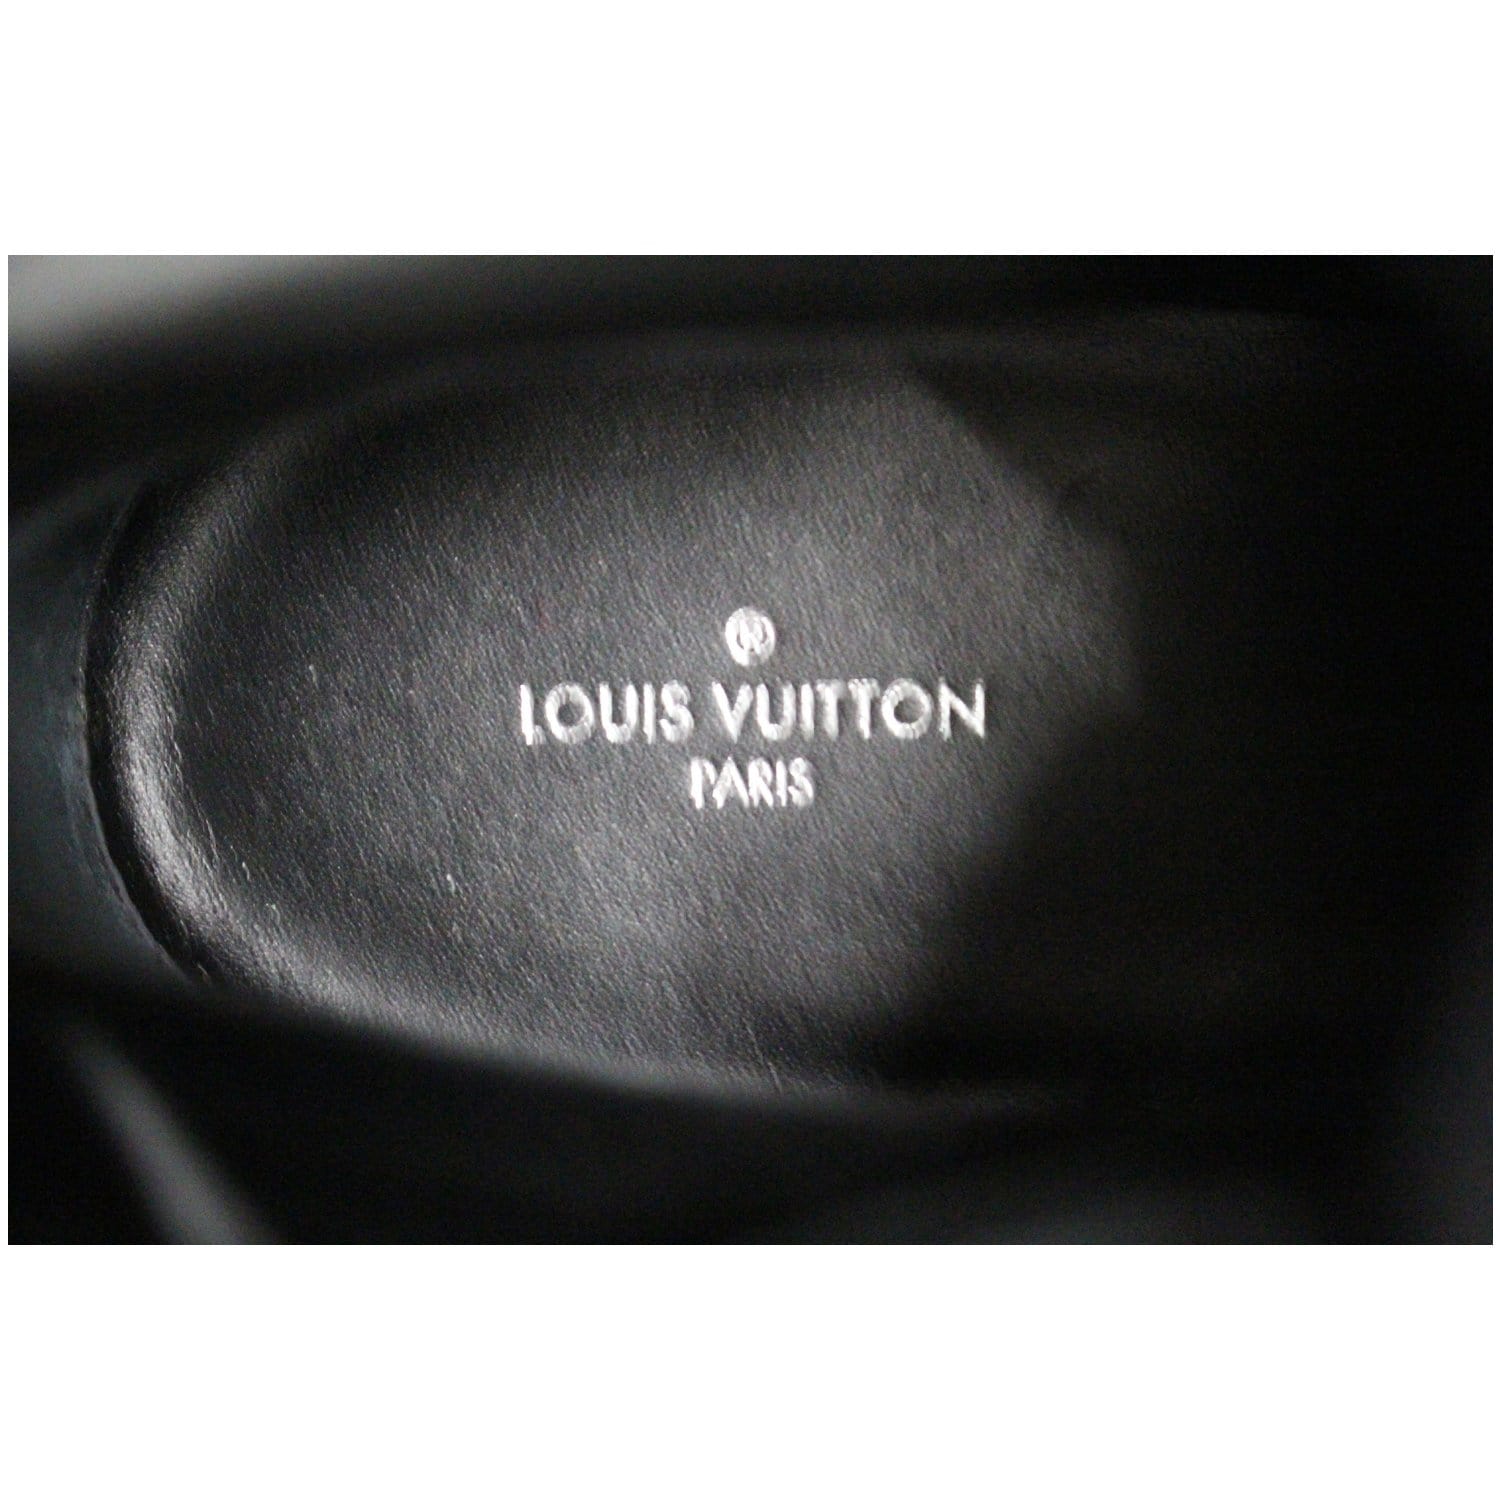 Louis Vuitton Metropolis Flat Ranger BLACK. Size 35.5